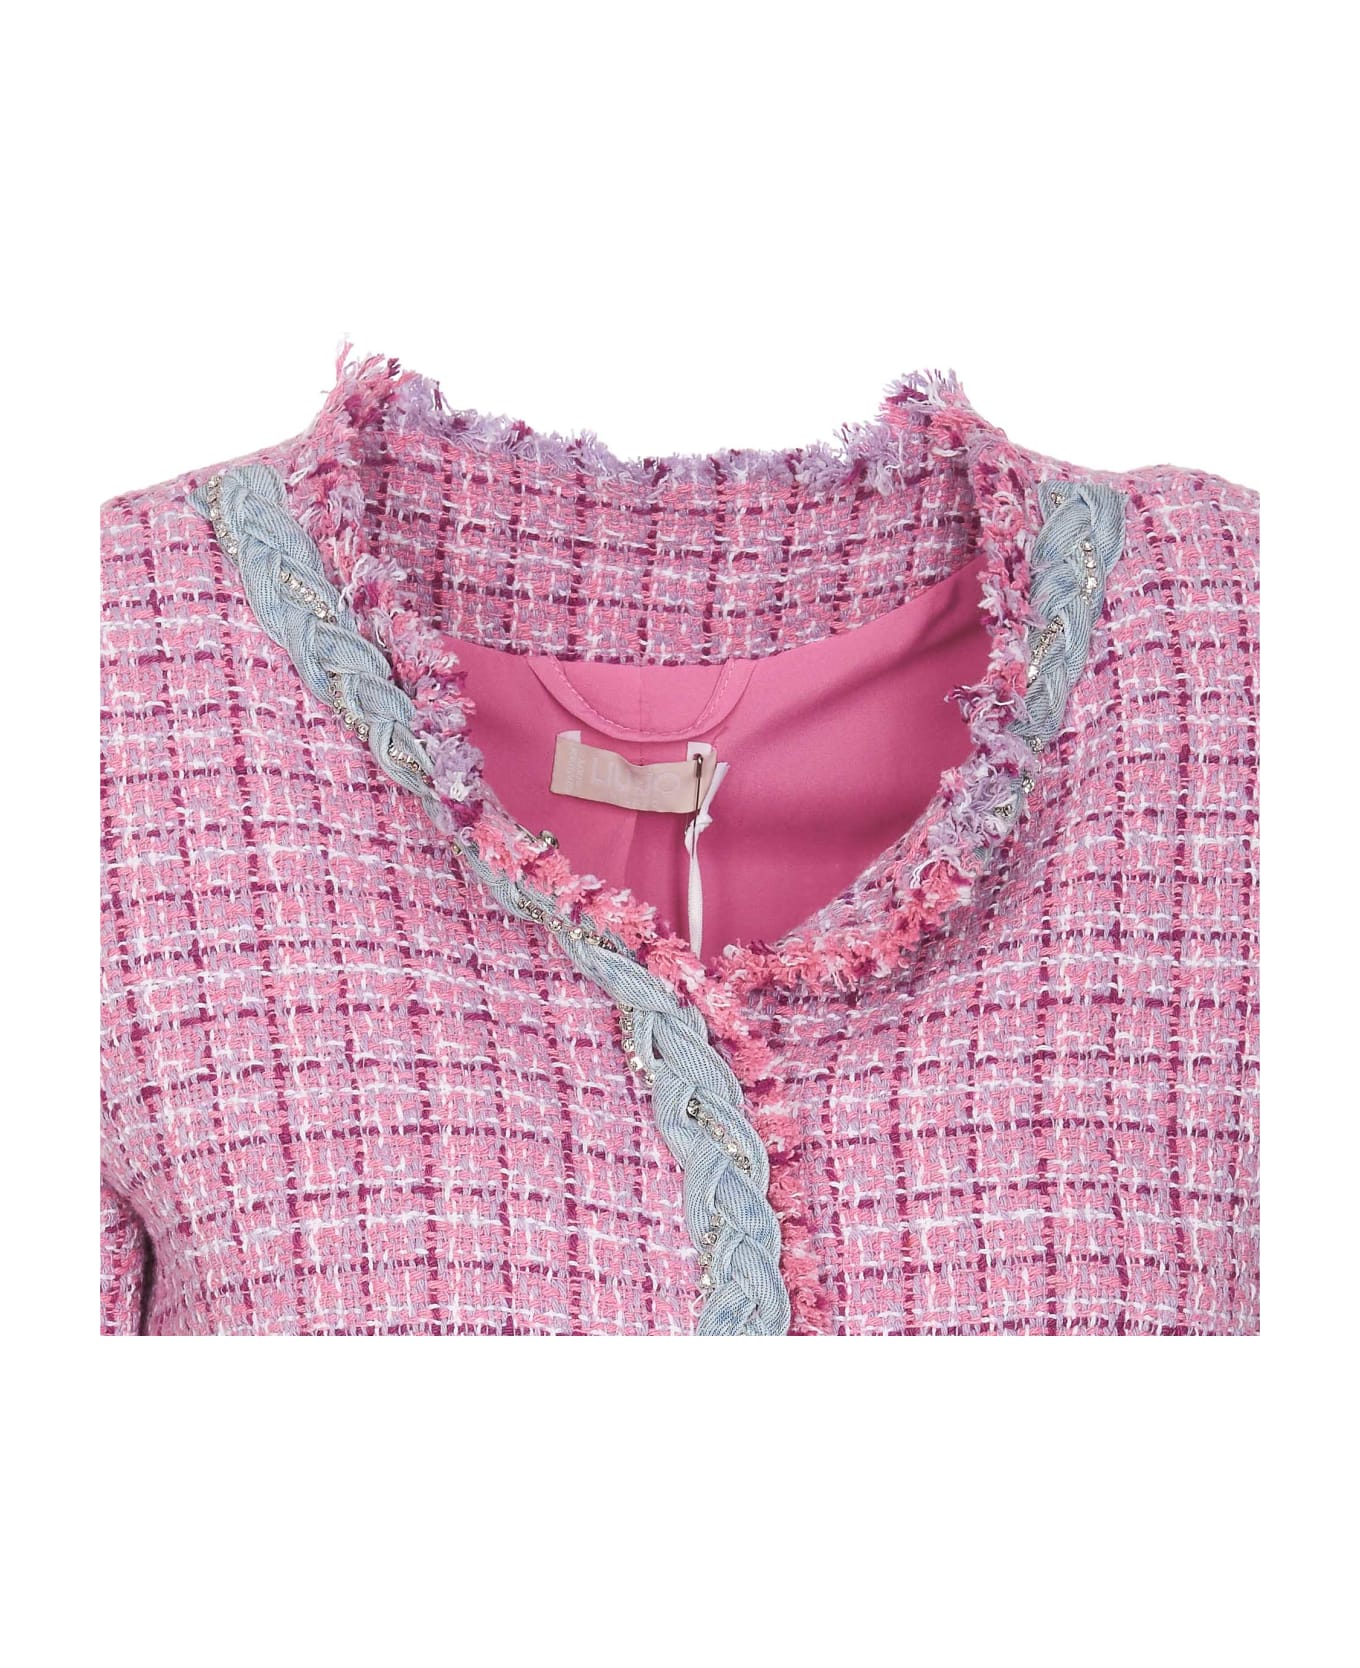 Liu-Jo Boucle' Jacket - Pink ブレザー